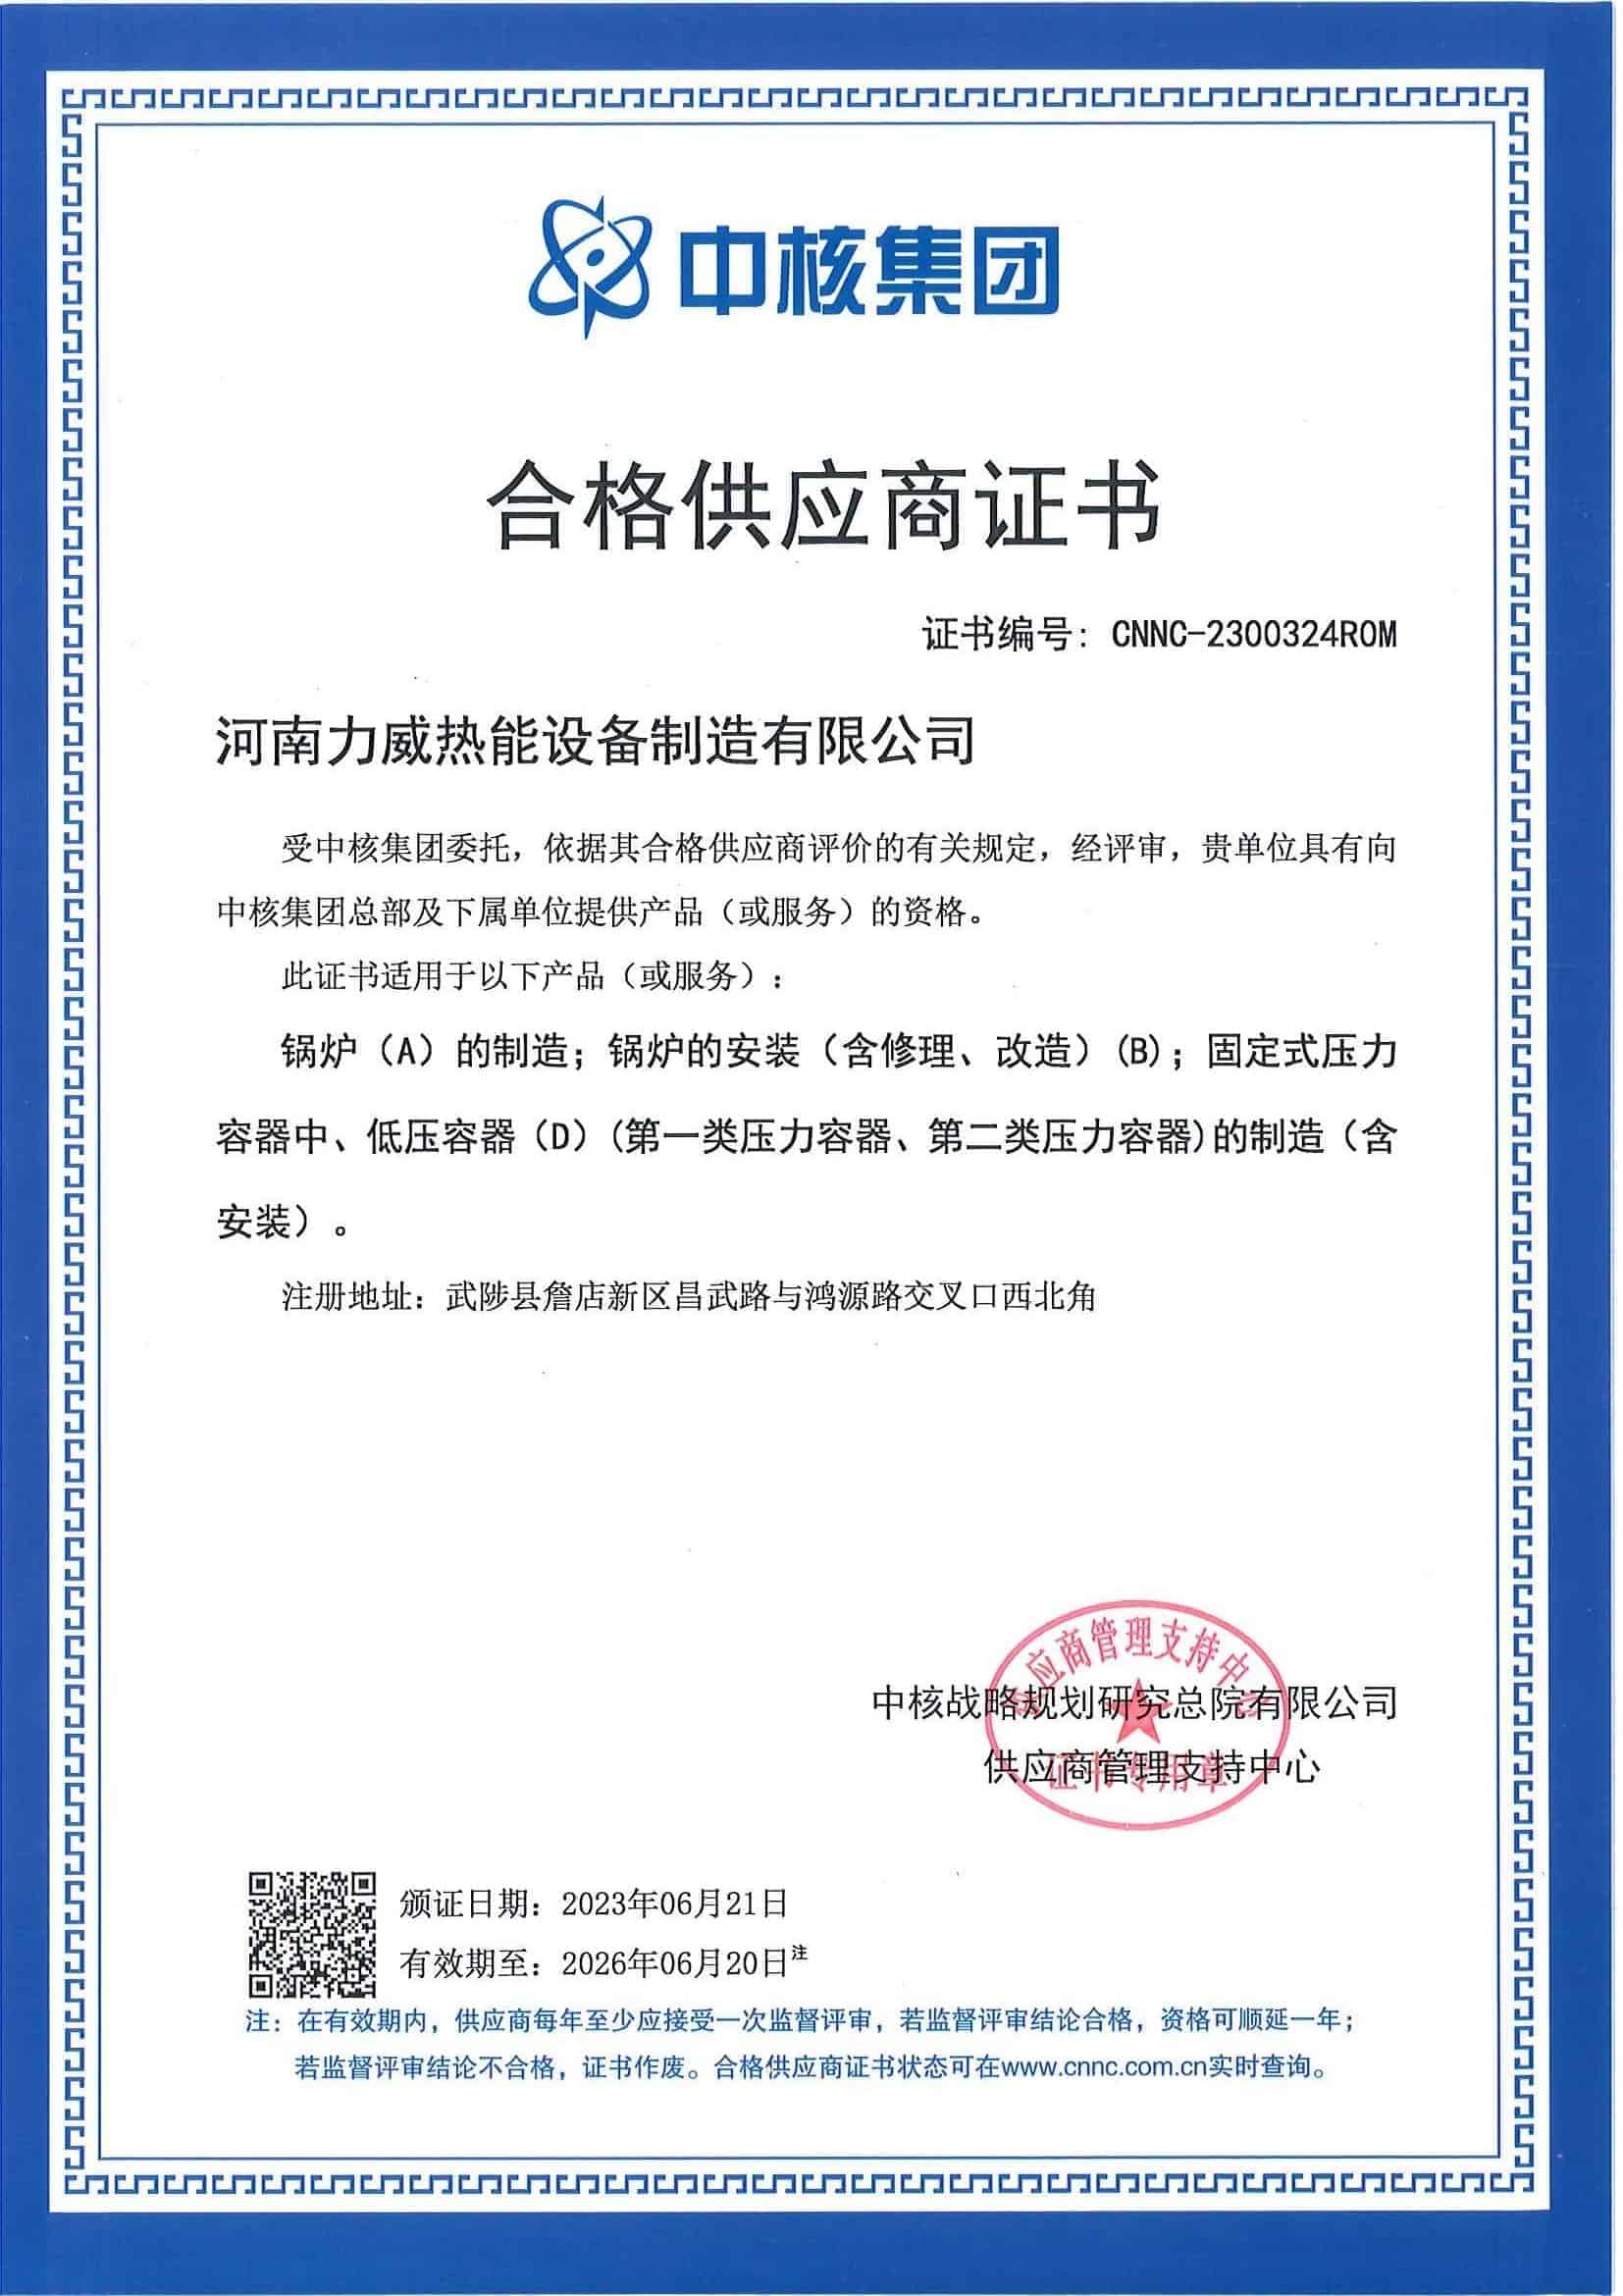 中核集团合格供应商证书